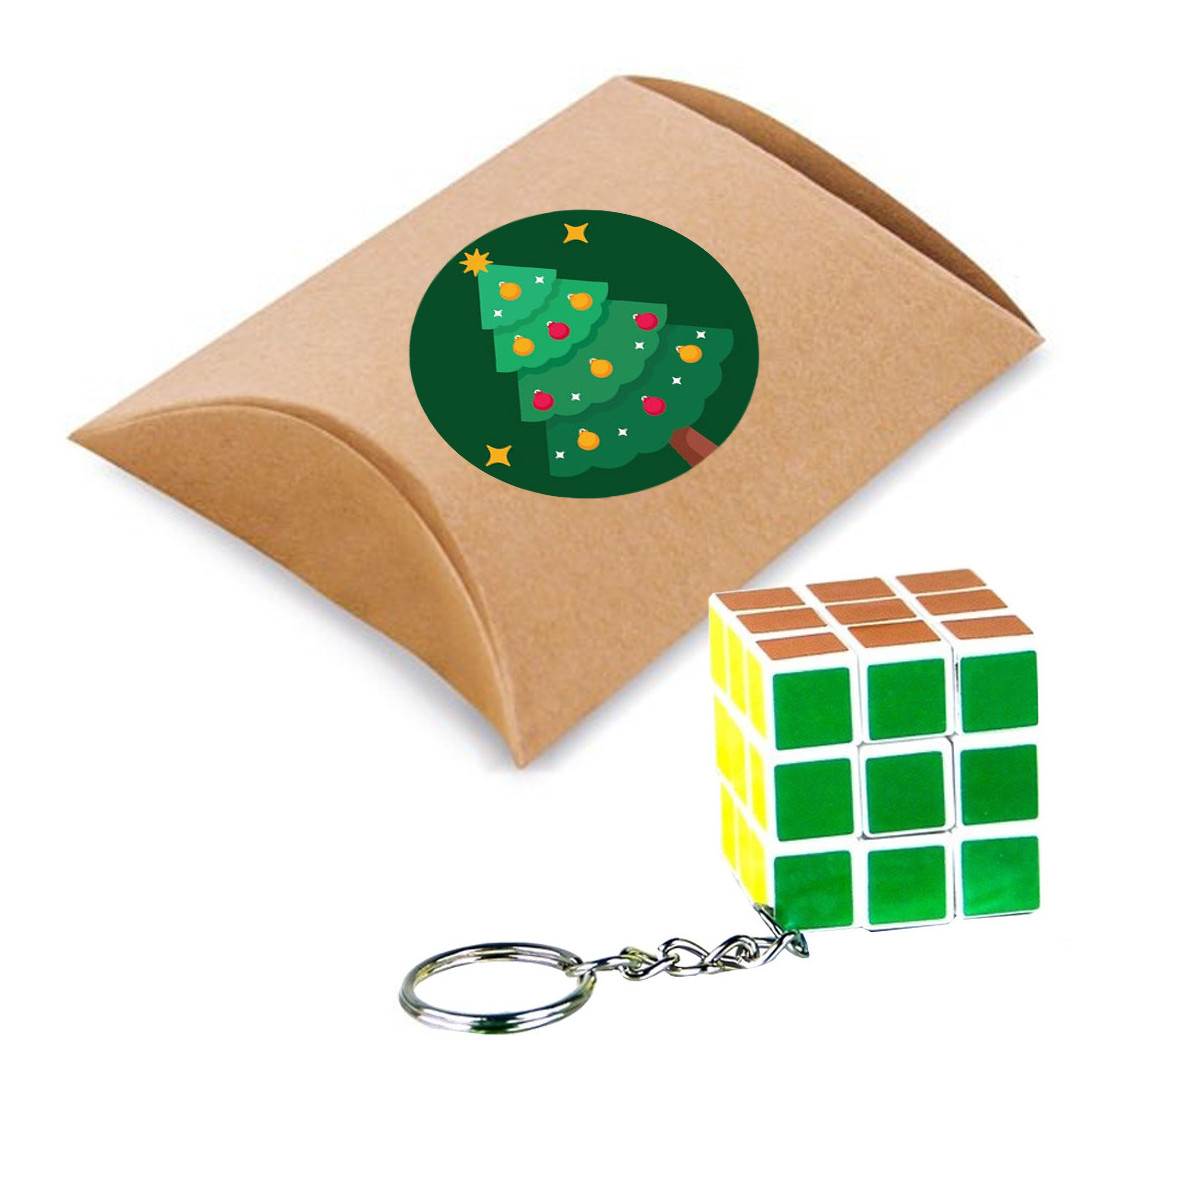 Cubo di rubik 3x3 su portachiavi presentato in scatola di cartone regalo e adesivo natalizio da personalizzare